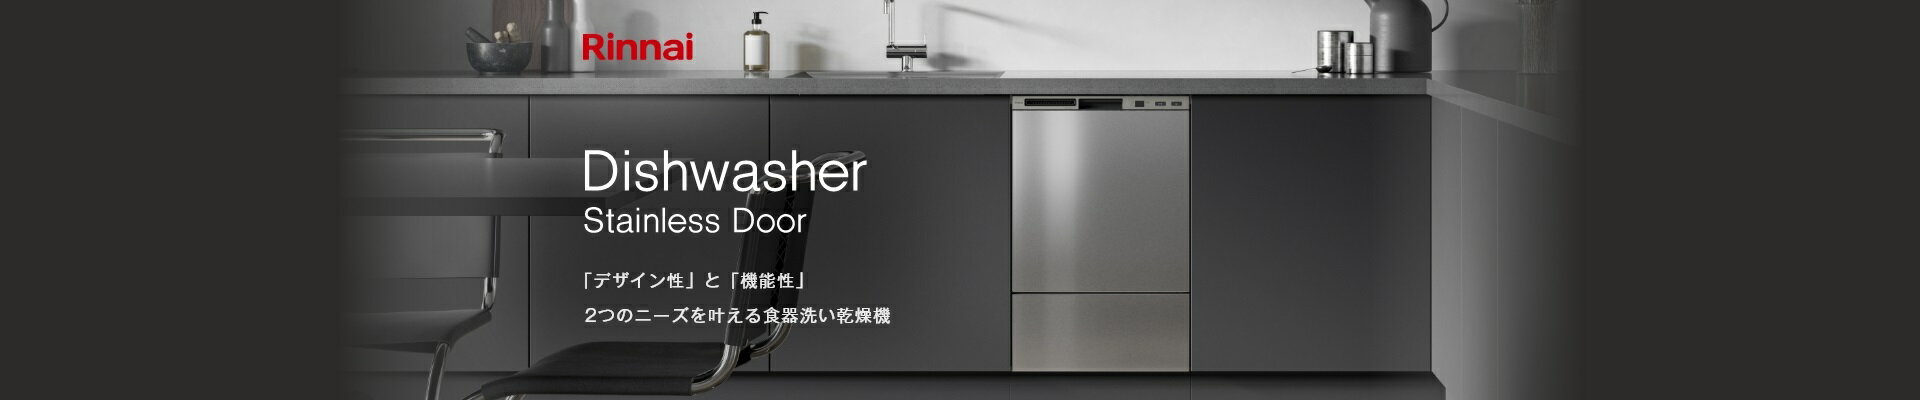 リンナイから「デザイン性」と「機能性」2つのニーズを叶える食器洗い乾燥機